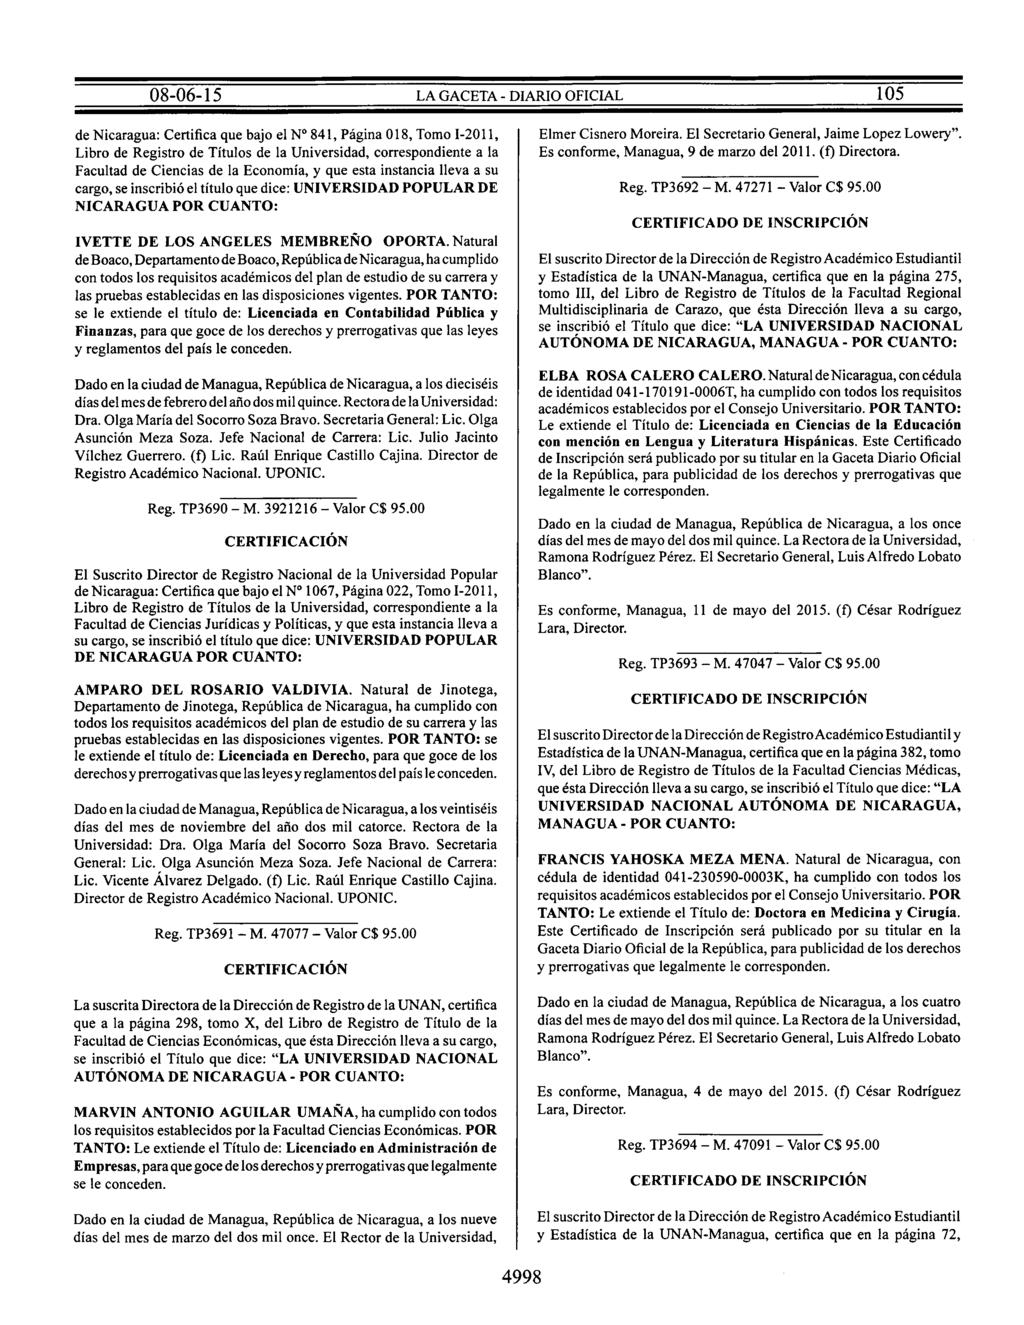 de Nicaragua: Certifica que bajo el Nº 841, Página 018, Tomo I-2011, Libro de Registro de Títulos de la Universidad, correspondiente a la Facultad de Ciencias de la Economía, y que esta instancia